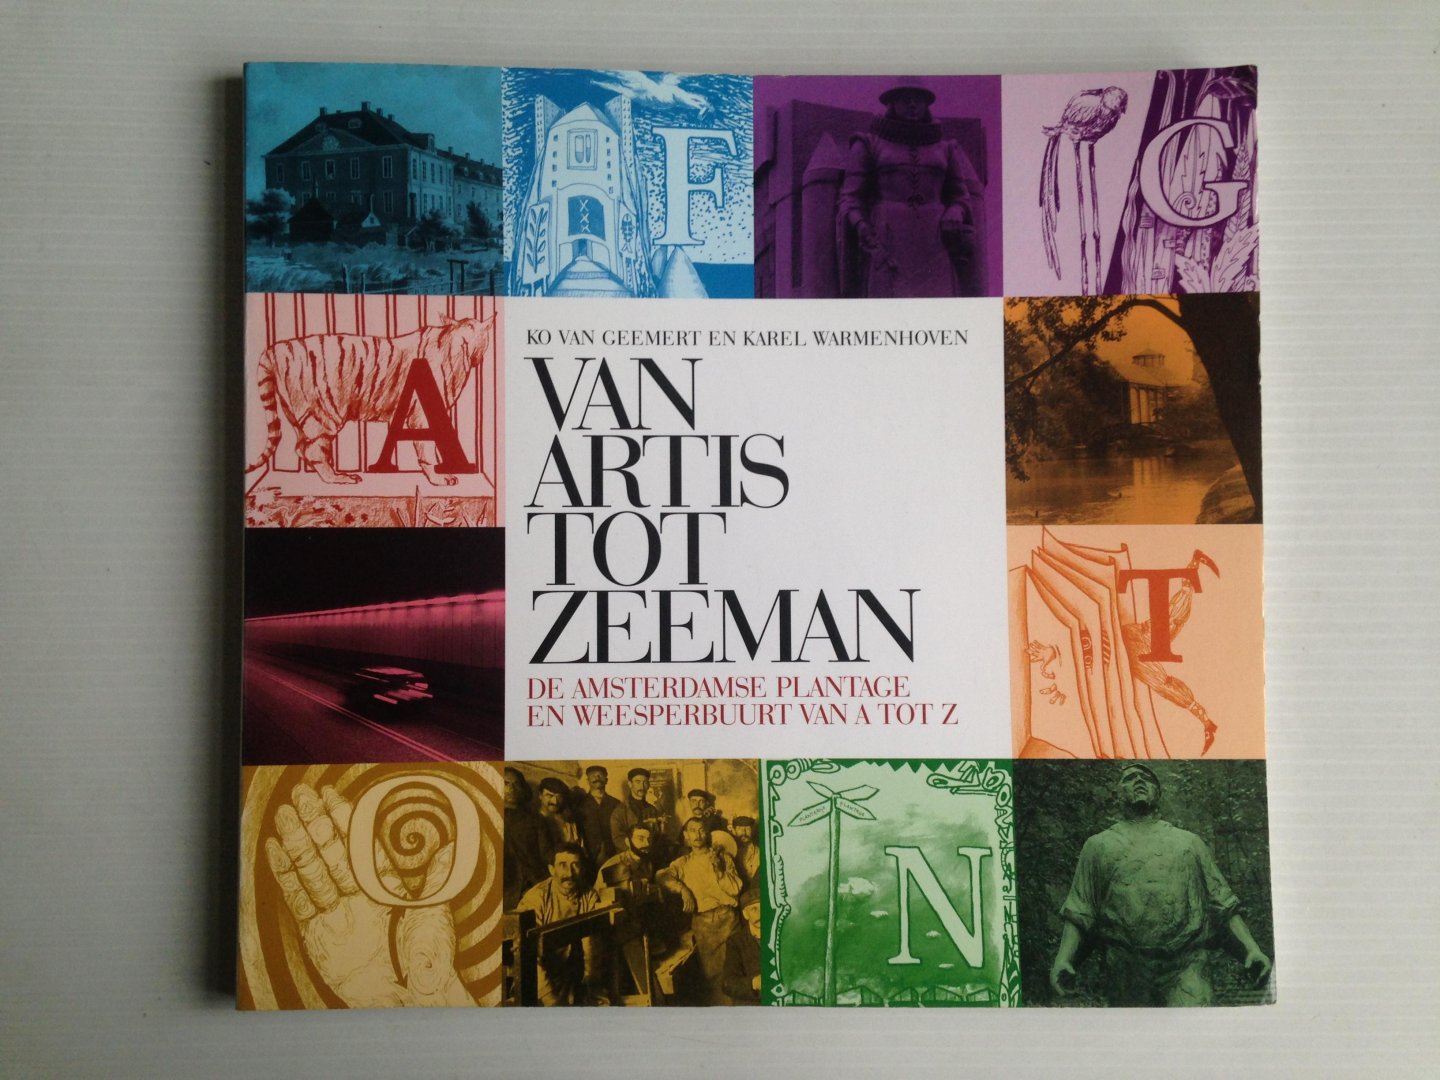 Geemert, Ko van & Karel Warmenhoven - Van Artis tot Zeeman, De Amsterdamse Plantage en Weesperbuurt van A tot Z